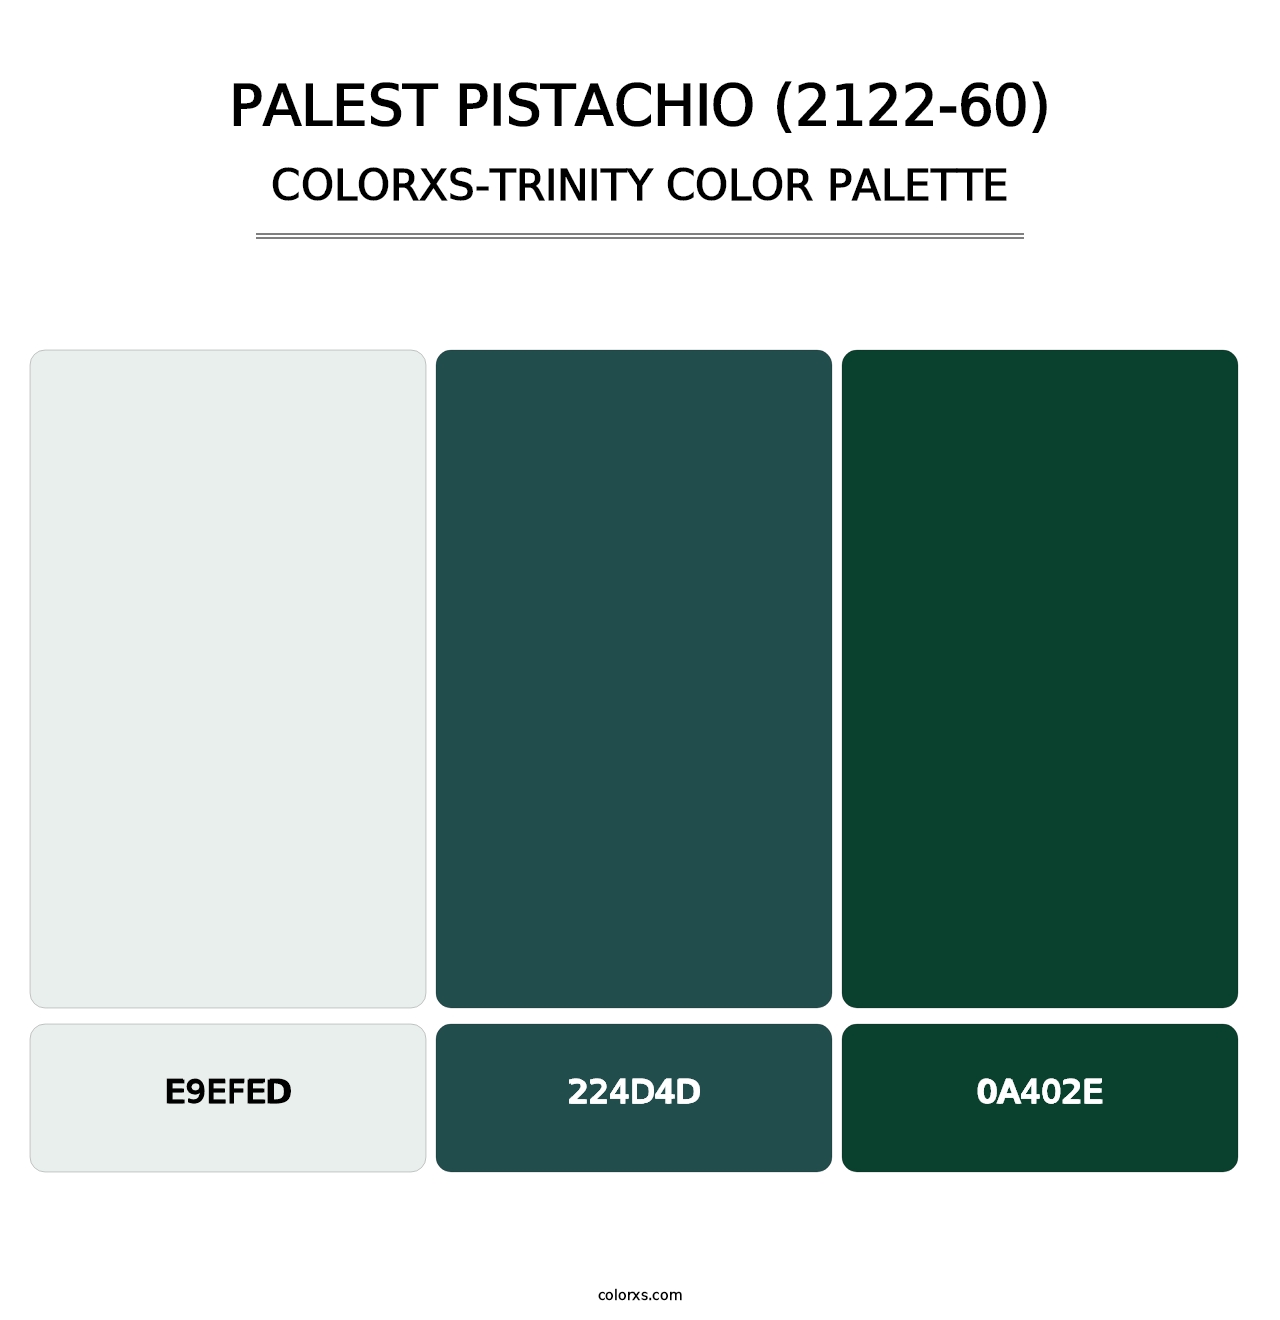 Palest Pistachio (2122-60) - Colorxs Trinity Palette